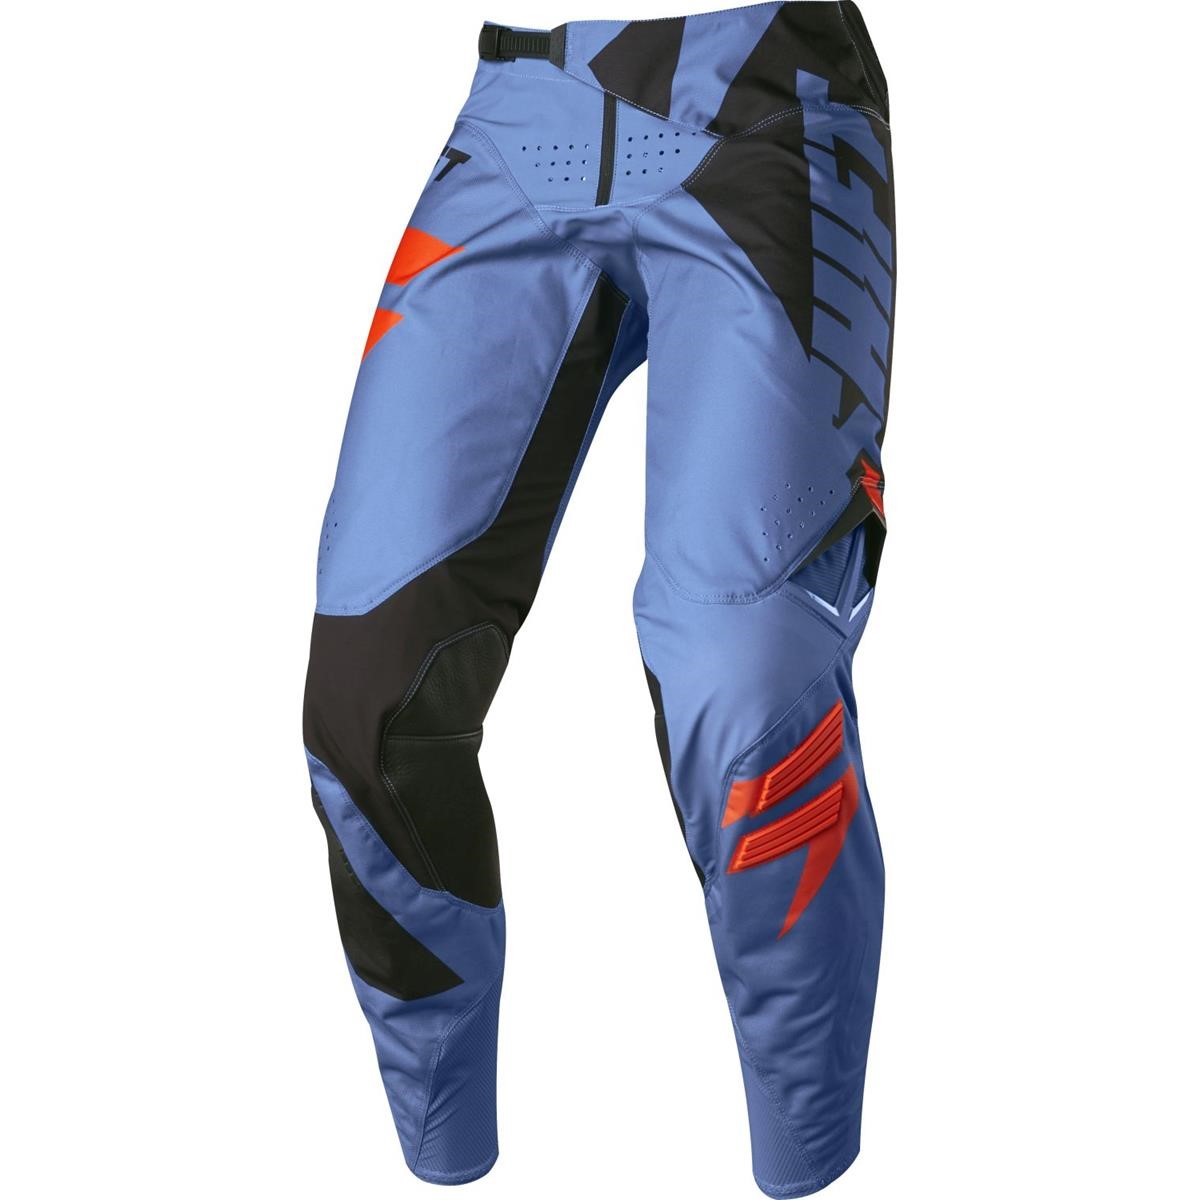 Shift Pantaloni MX 3lack Blue - Mainline